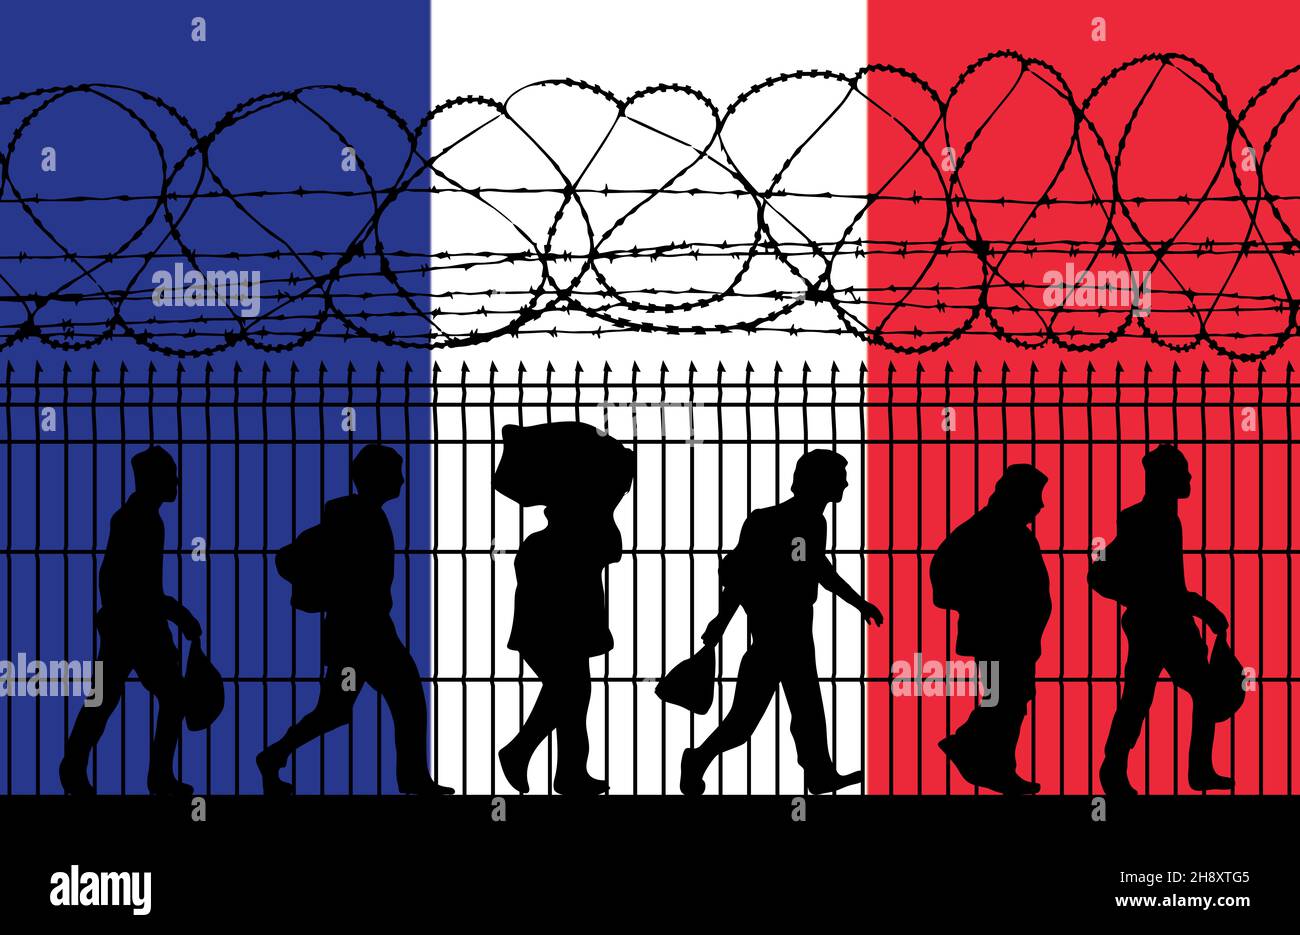 Drapeau de France.Réfugiés près d'une clôture barbelée.Les immigrants utilisés comme arme politique pour l'attaque hybride Banque D'Images